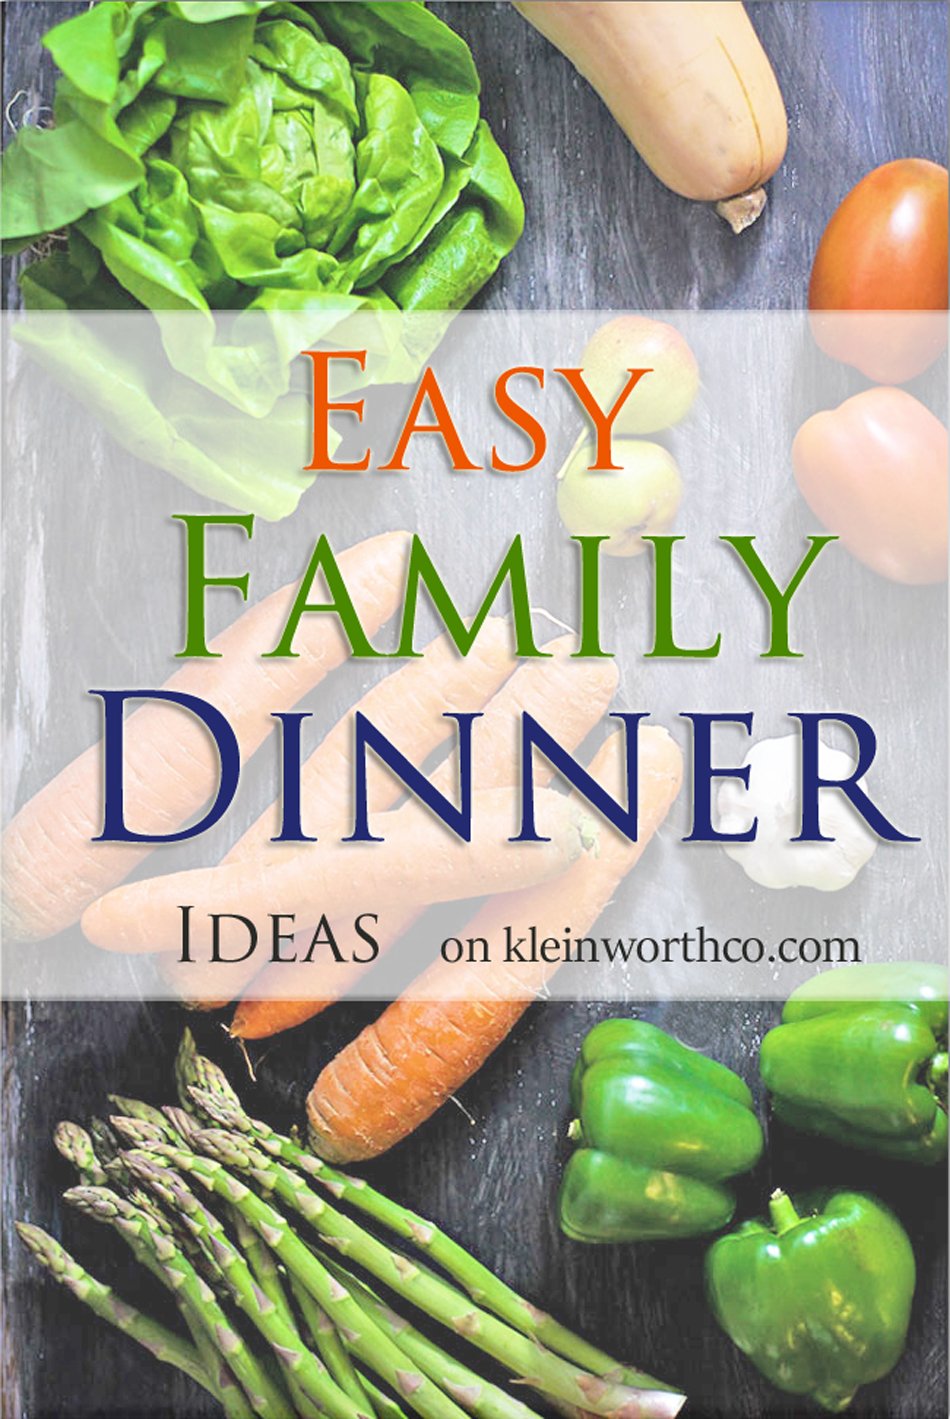 Easy Family Dinner Ideas - Kleinworth & Co